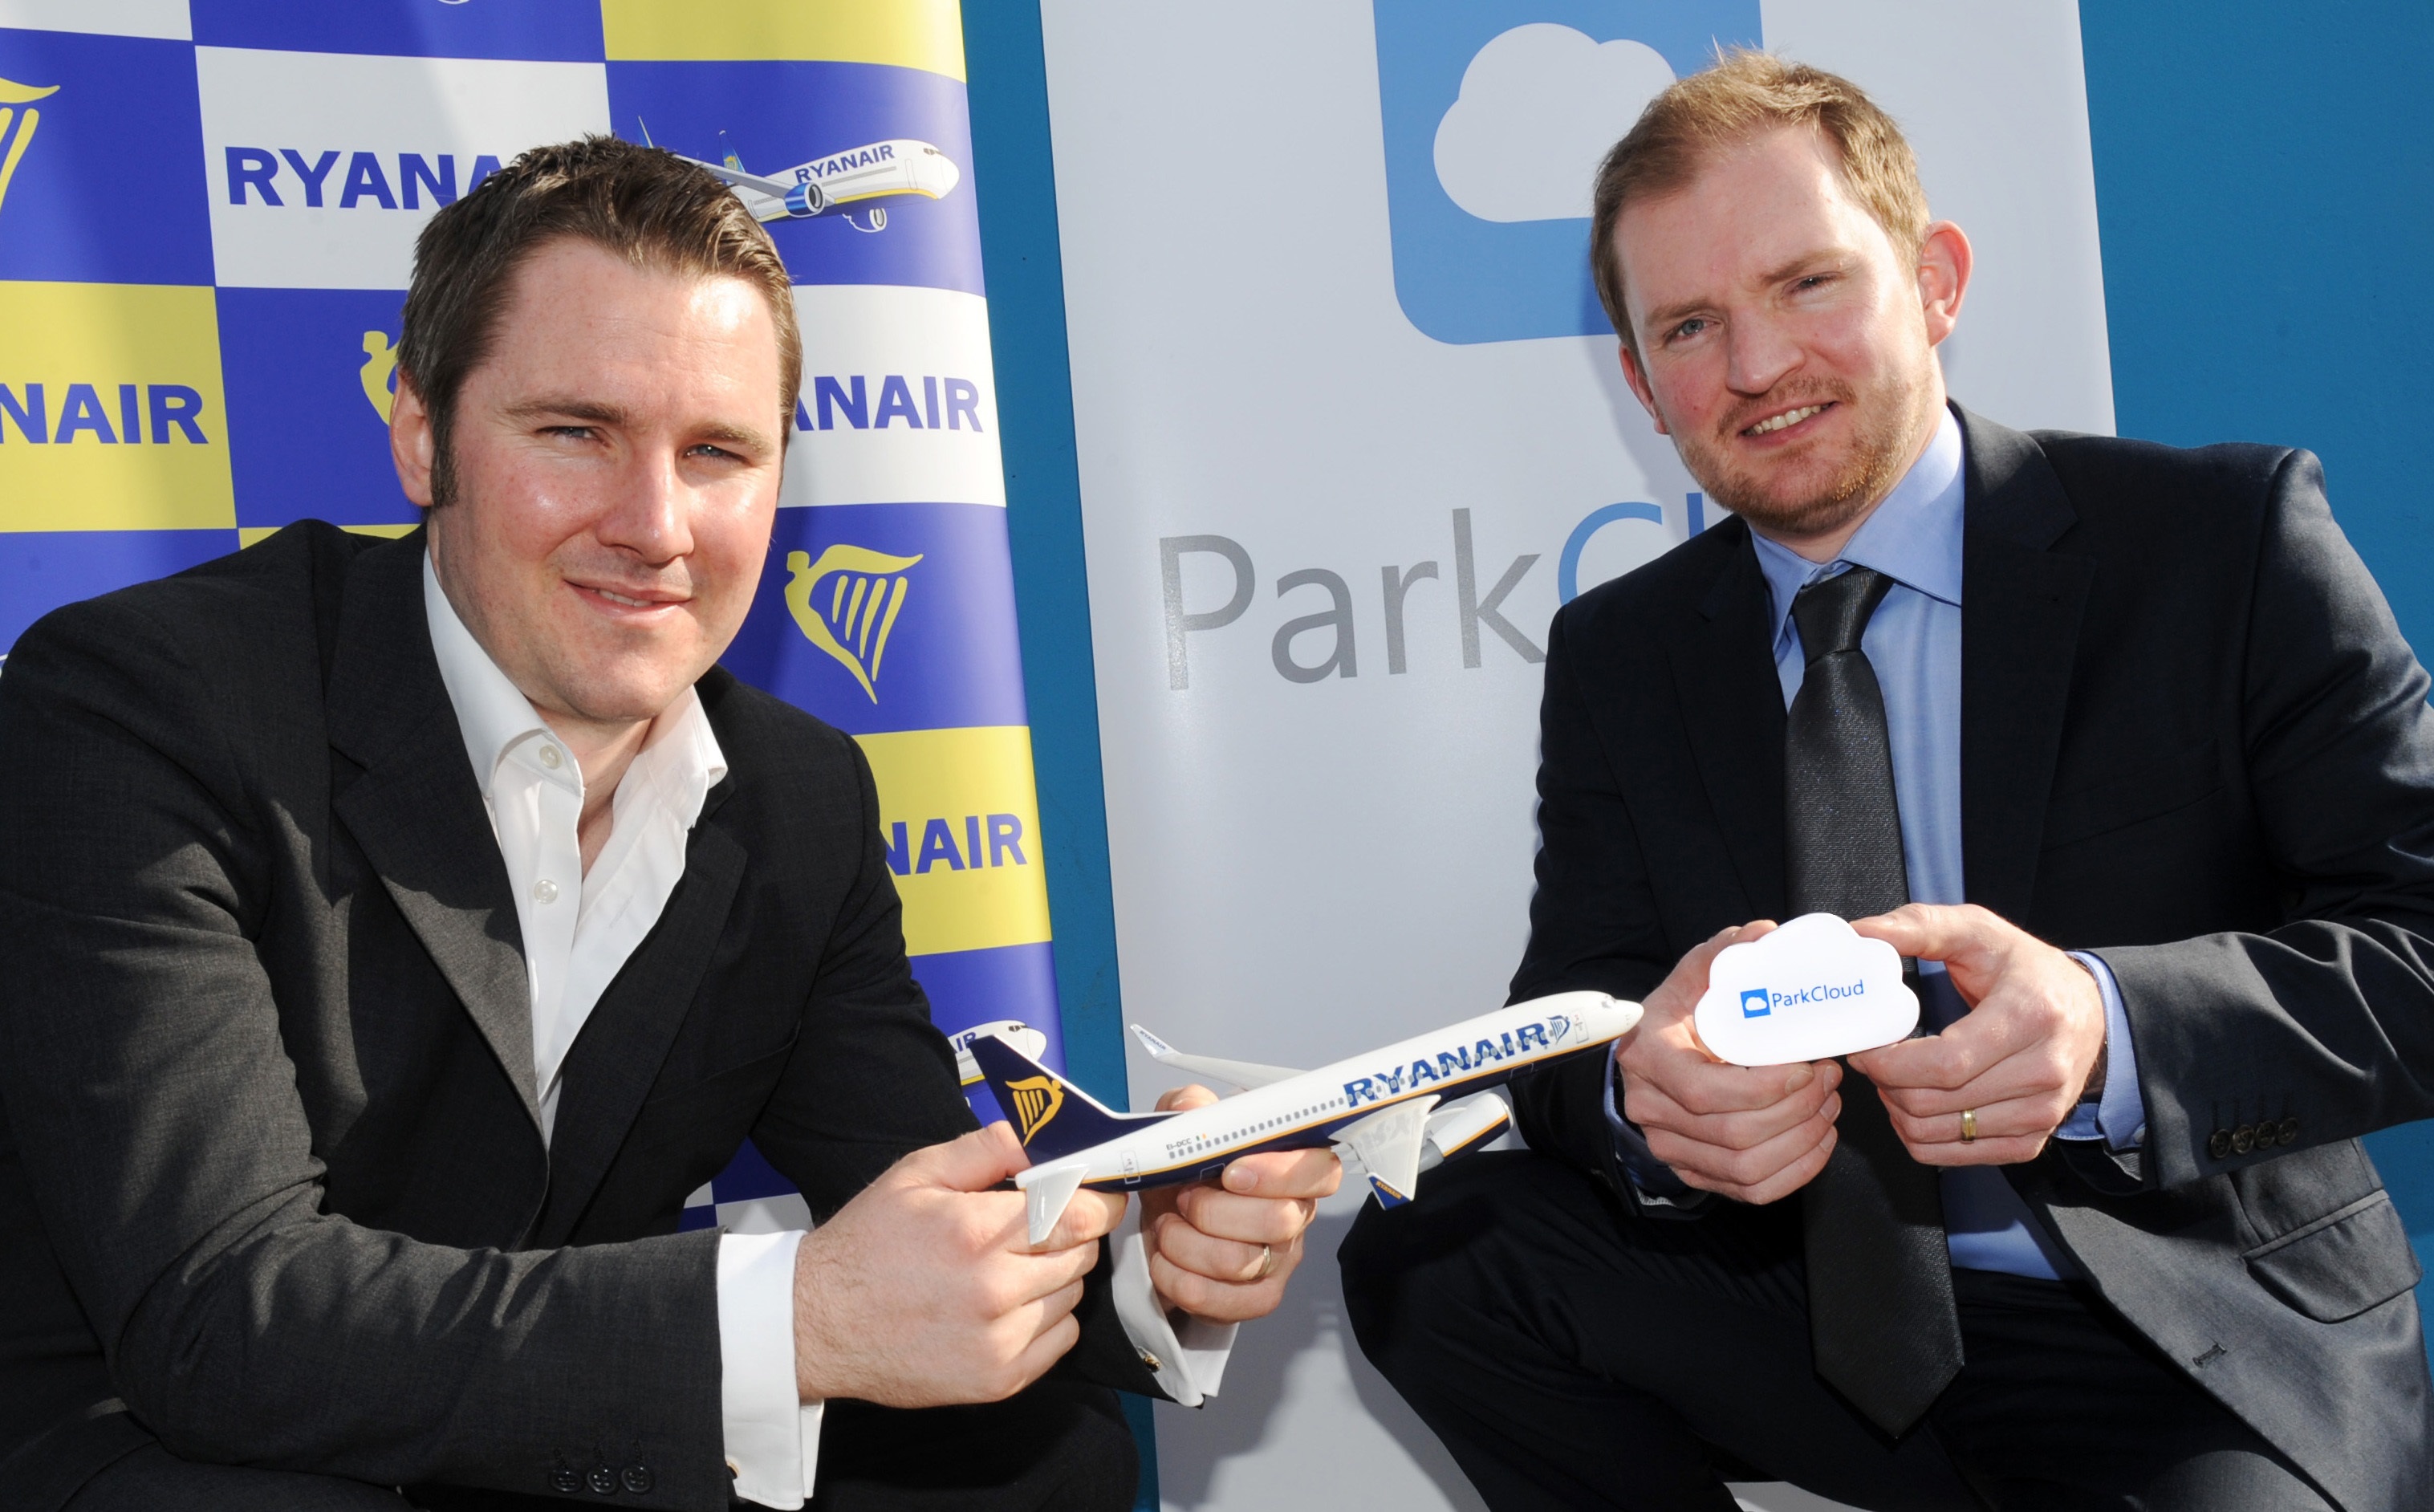 ParkCloud's Mark Pegler with Ryanair's Robin Kiely